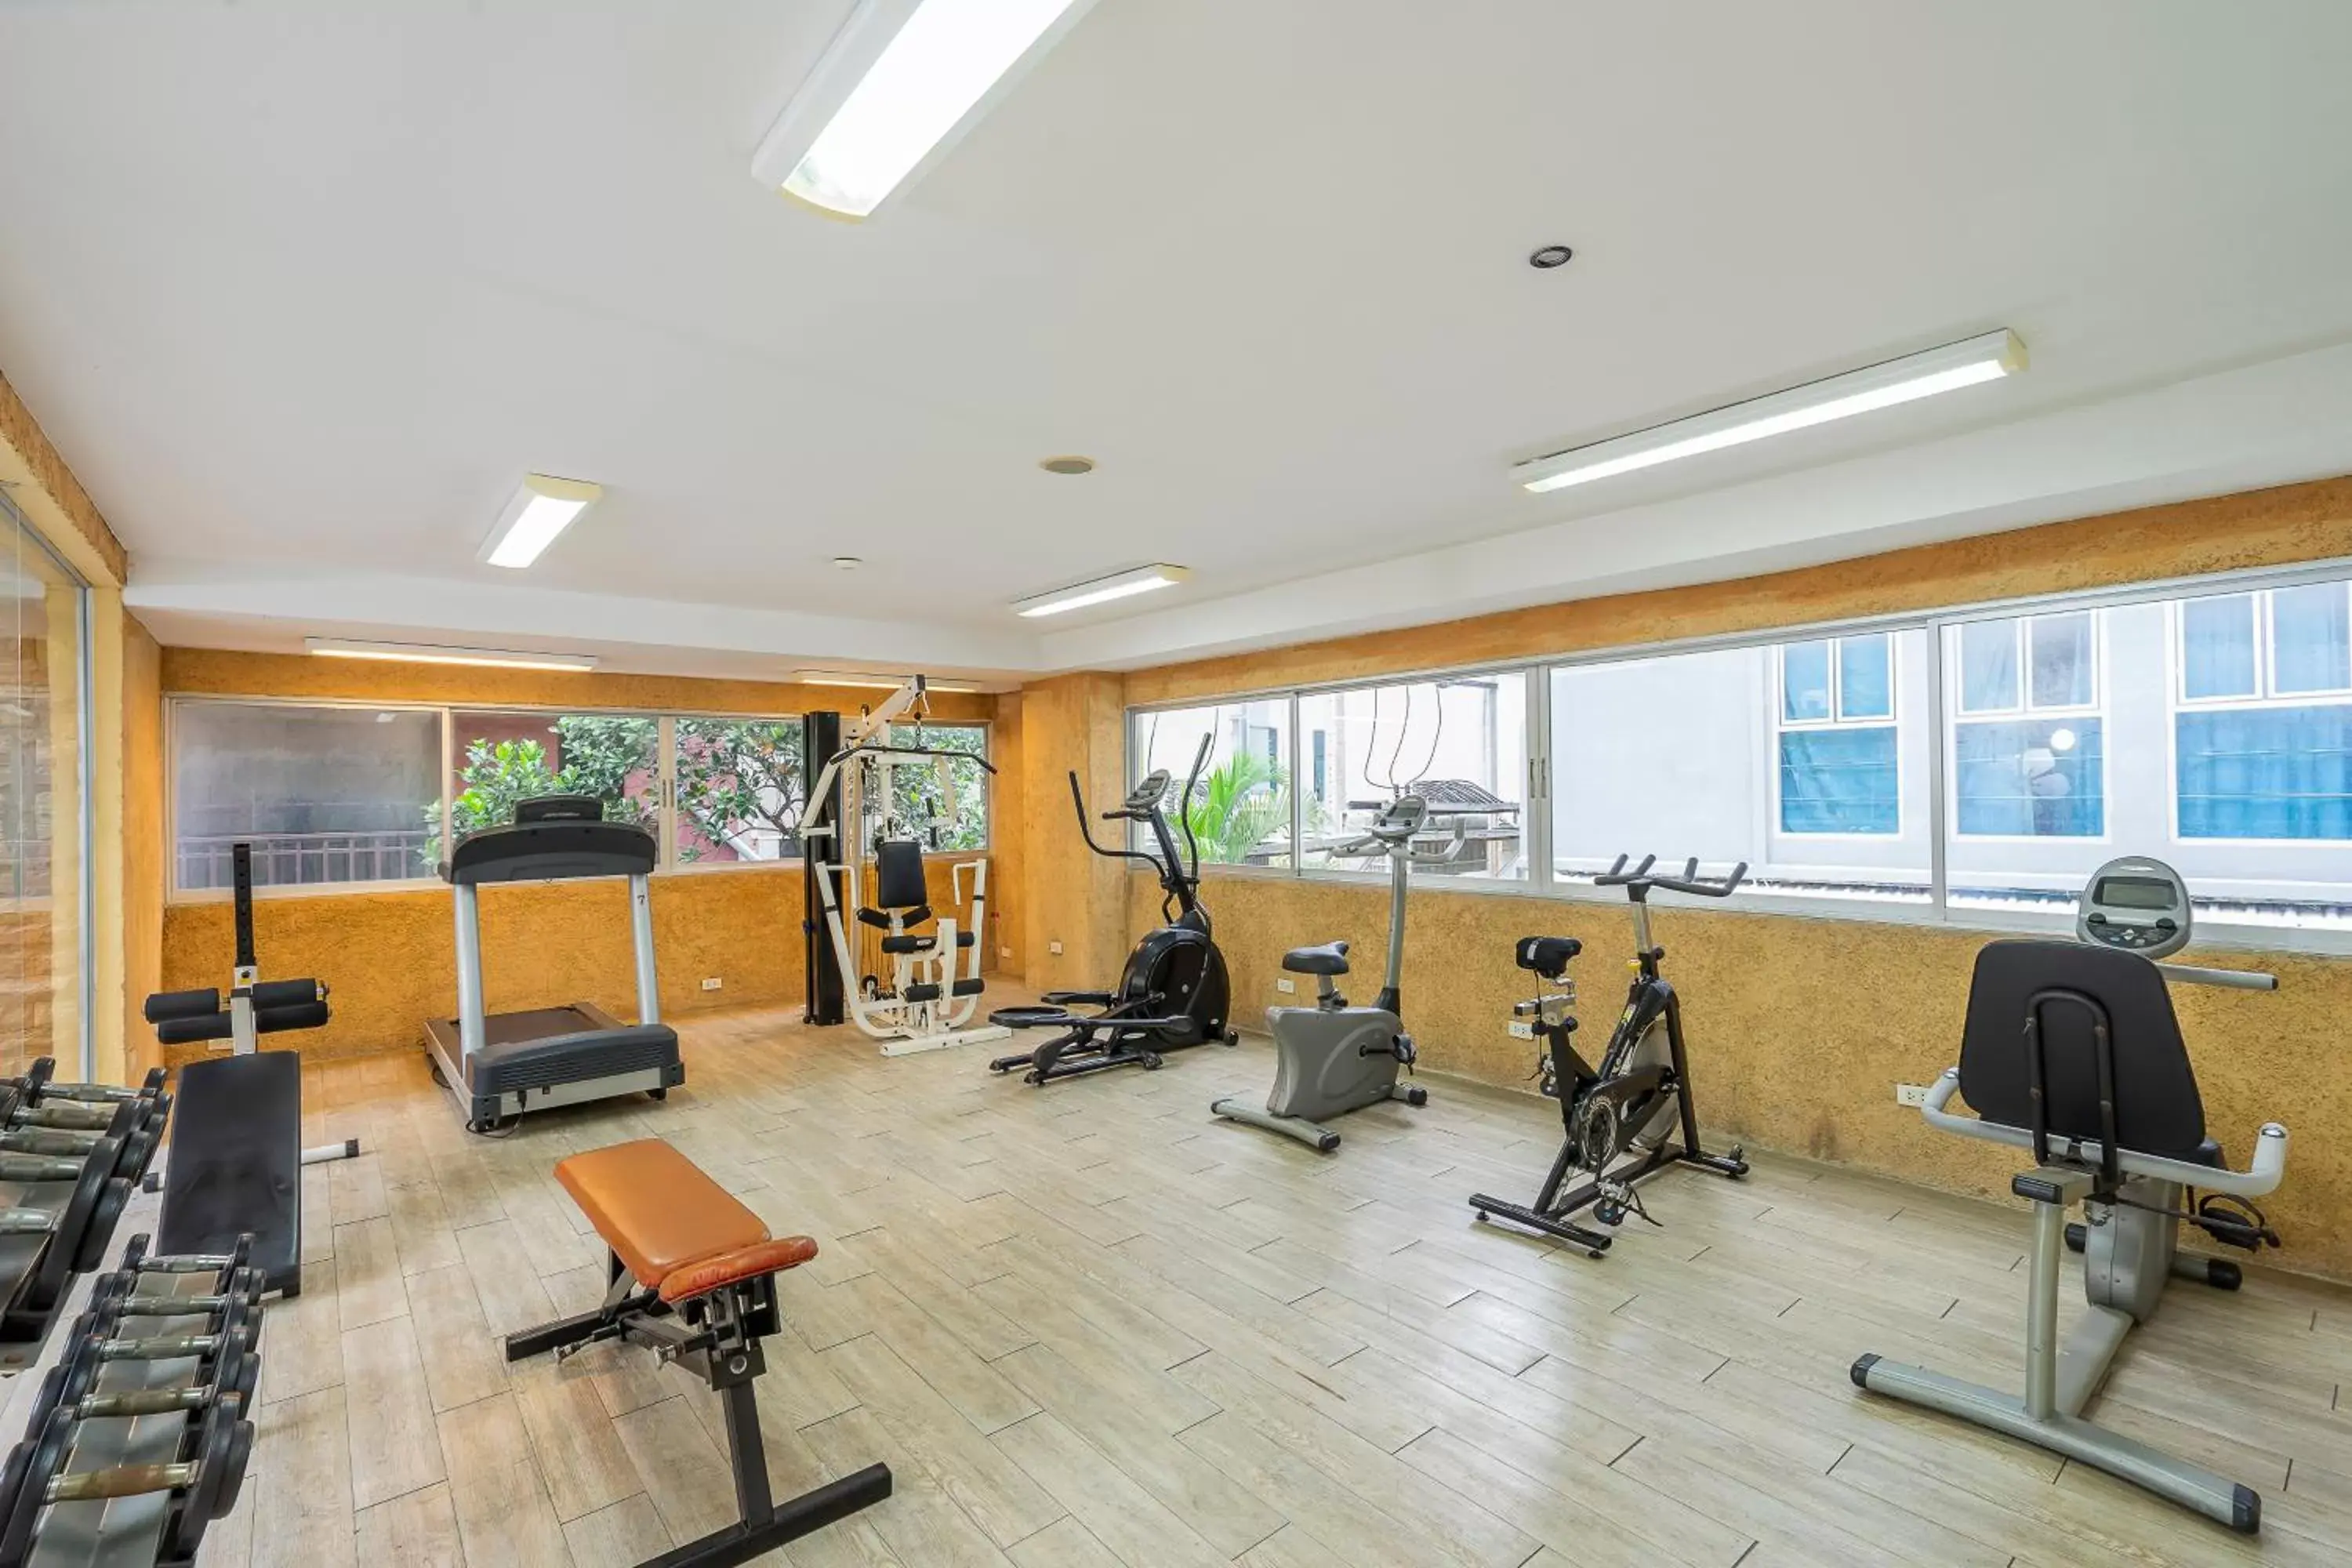 Fitness centre/facilities, Fitness Center/Facilities in Bella Villa Prima